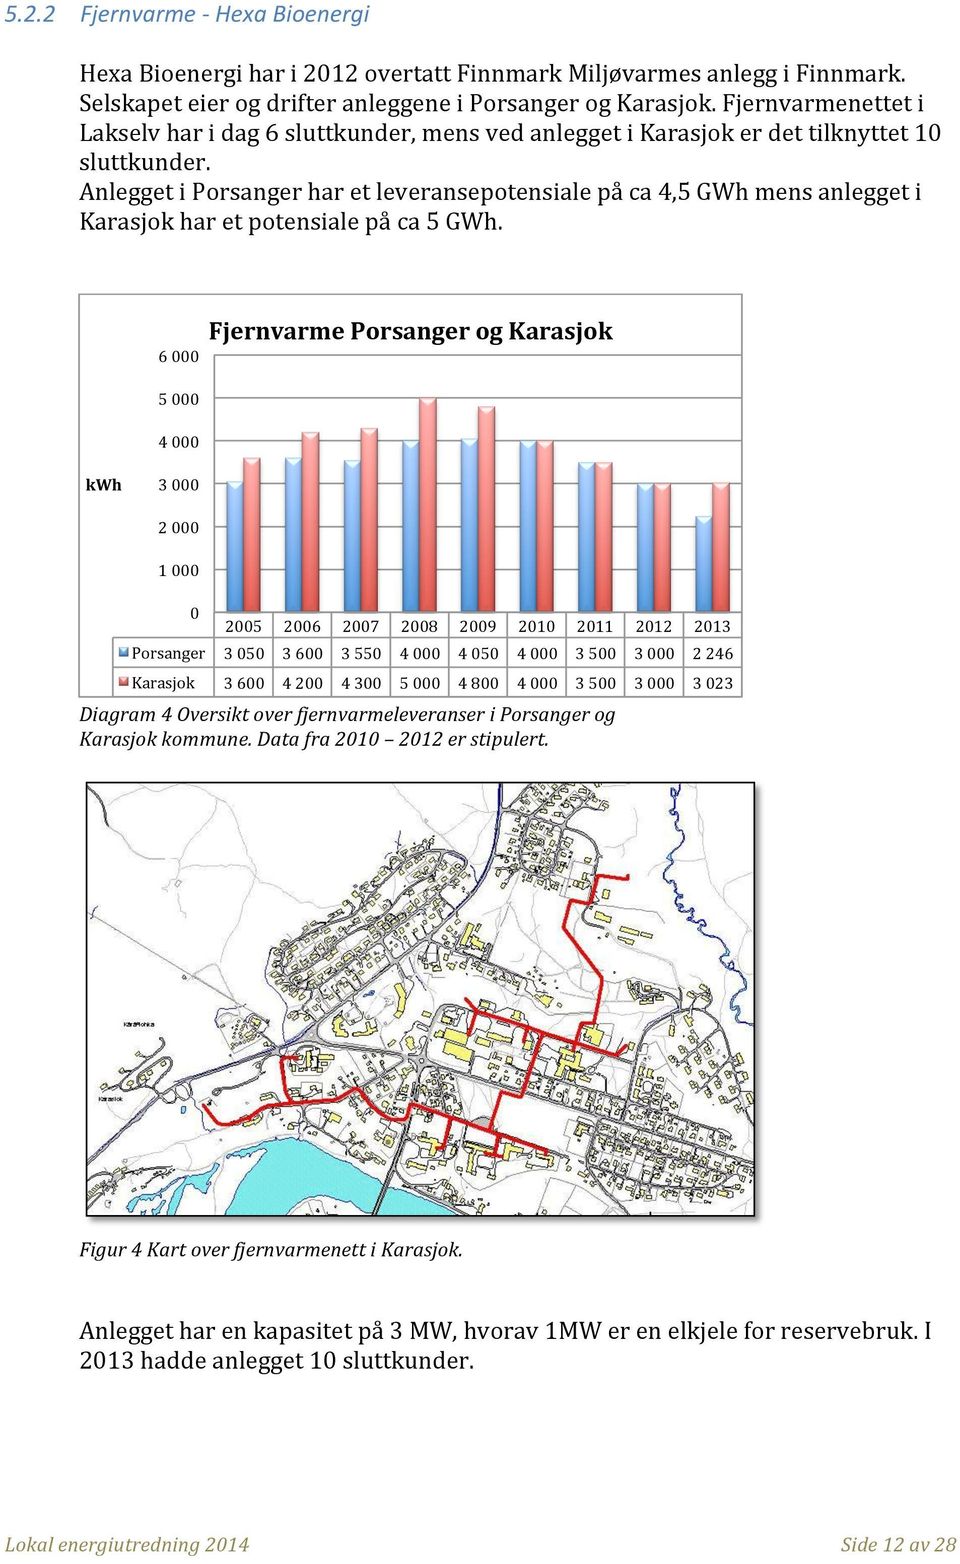 Anlegget i Porsanger har et leveransepotensiale på ca 4,5 GWh mens anlegget i Karasjok har et potensiale på ca 5 GWh.